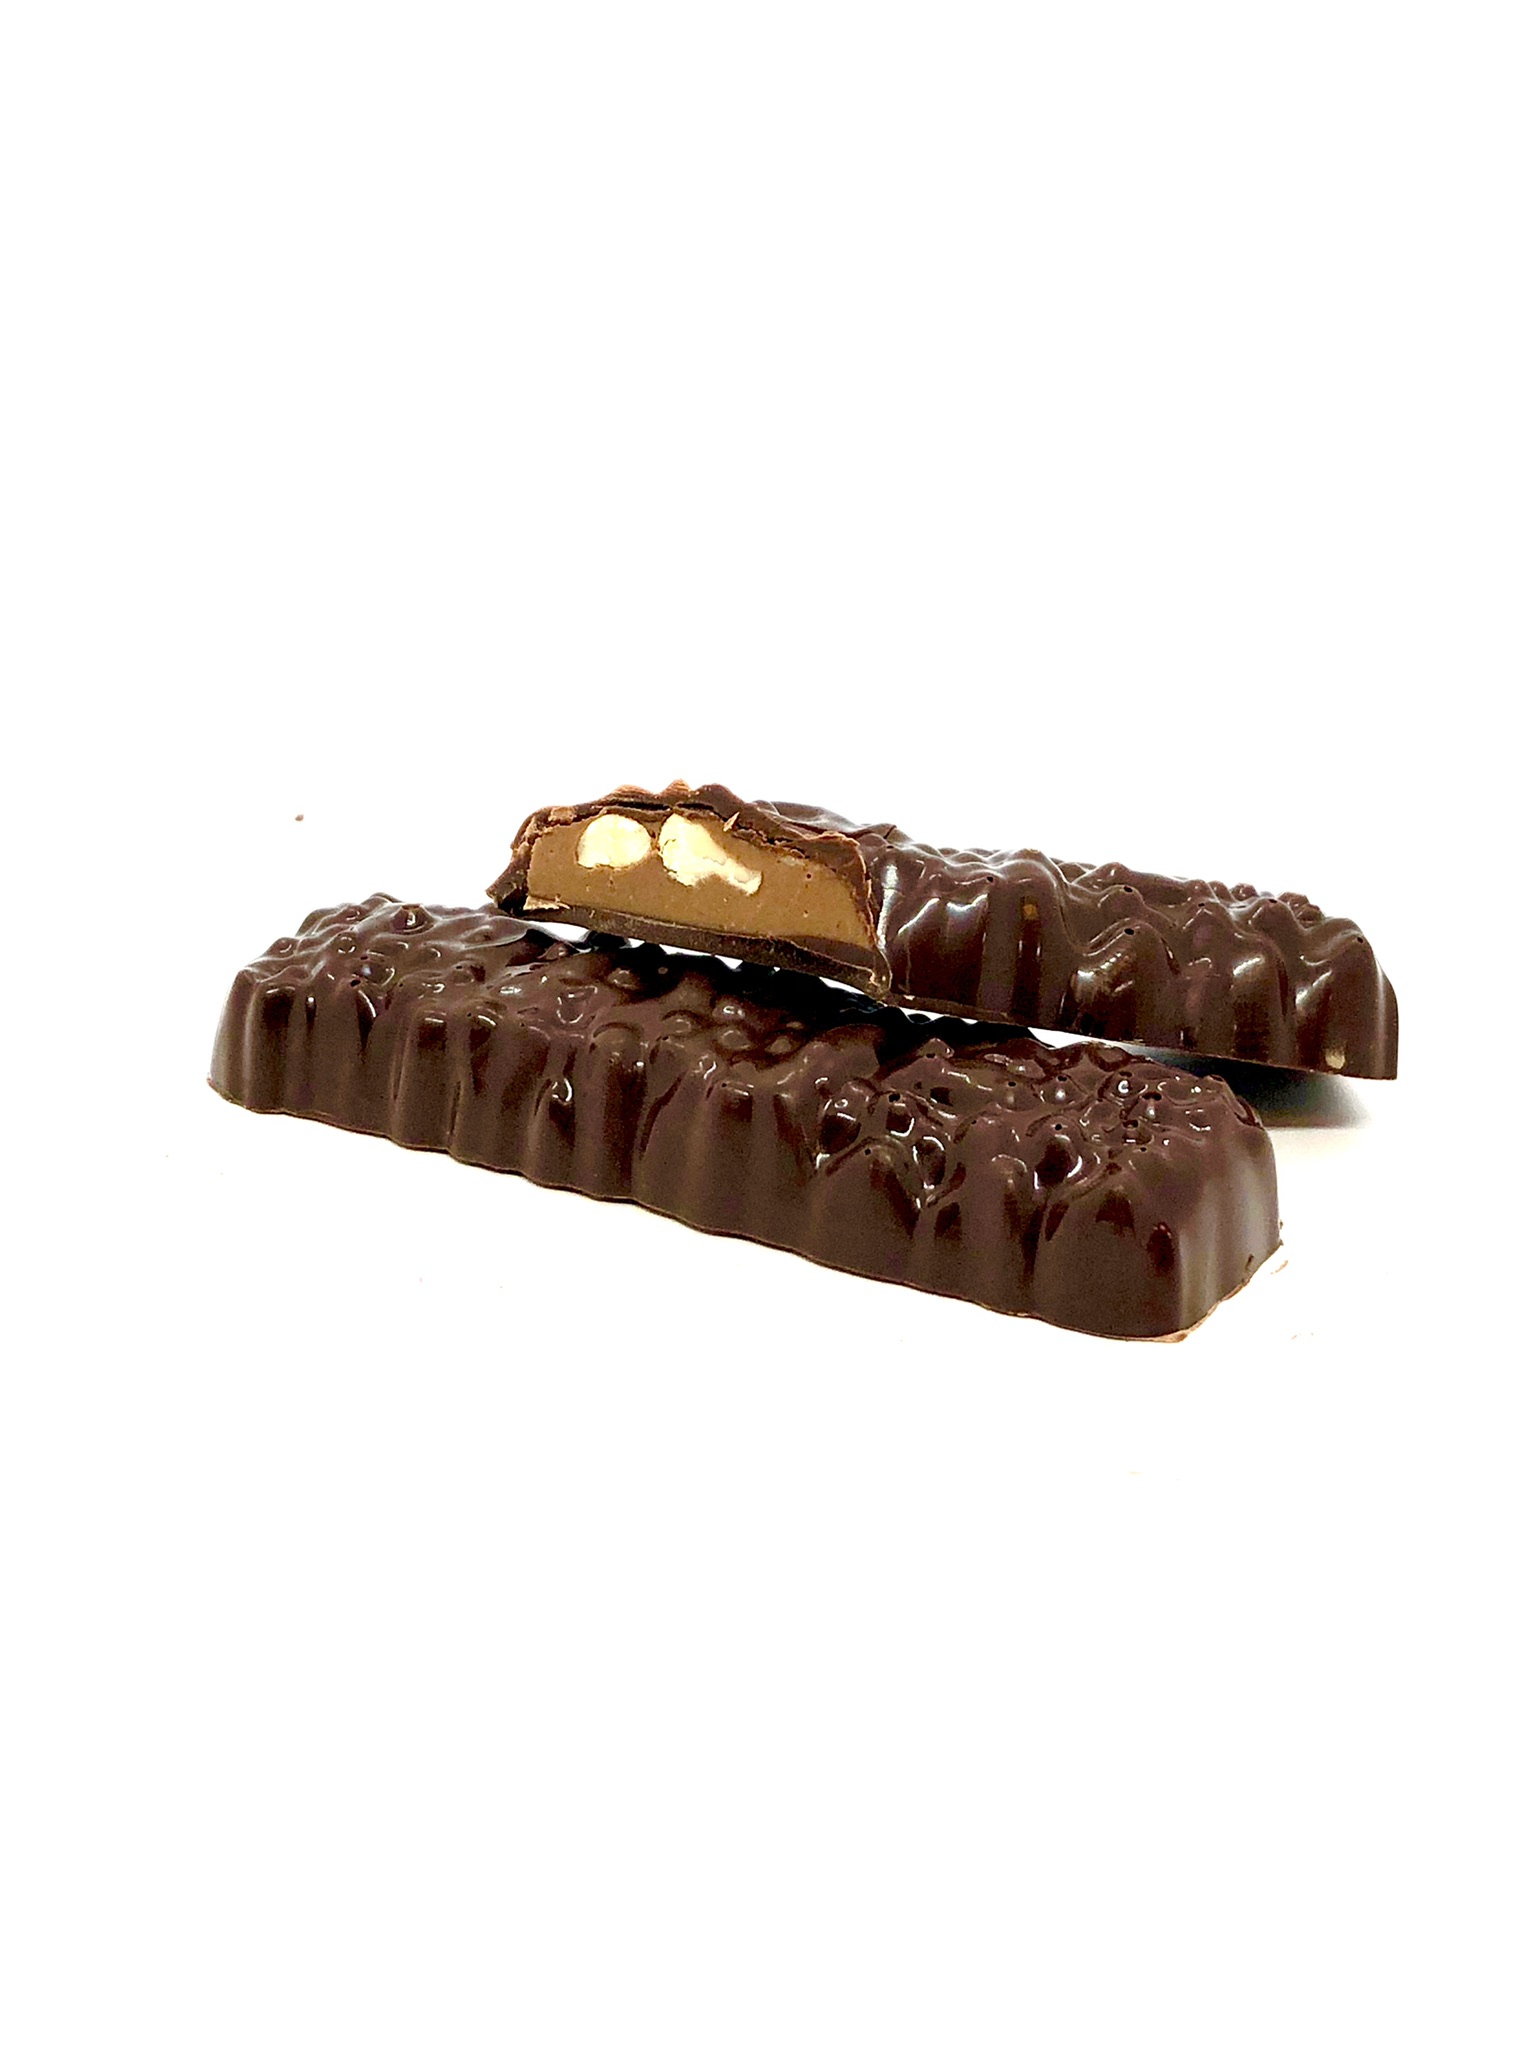 Chokladbar – Hasselnötpraliné